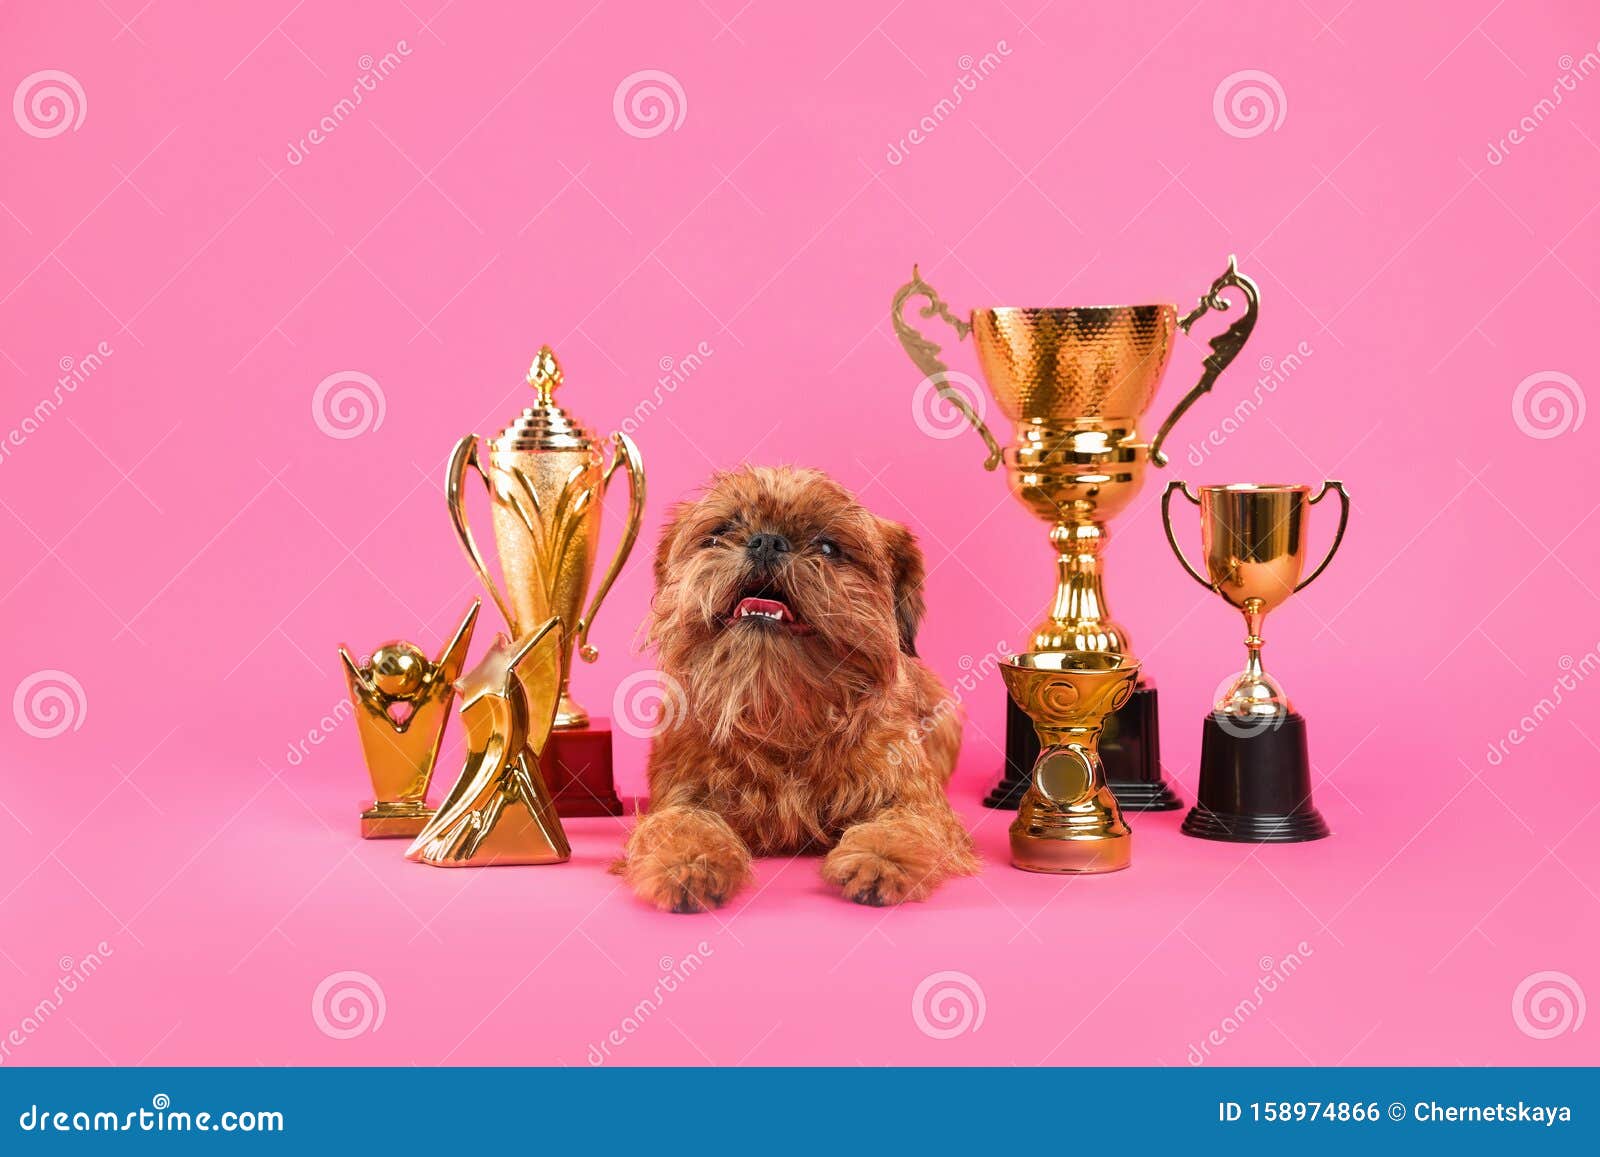 Cute Il Cane Griffon Di Bruxelles Con I Trofei Di Campioni Fotografia ...